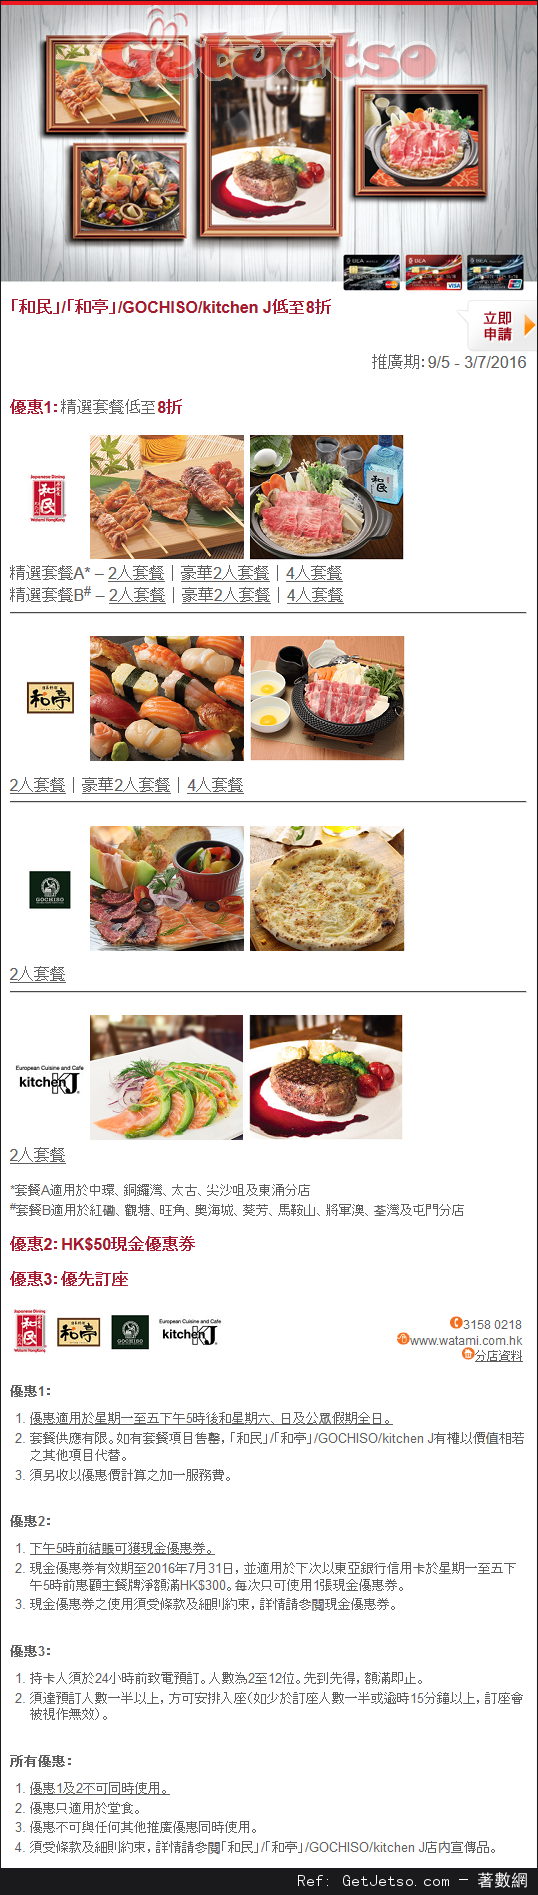 東亞信用卡享和民/和亭/GOCHISO/kitchen J 低至8折優惠(至16年7月3日)圖片1